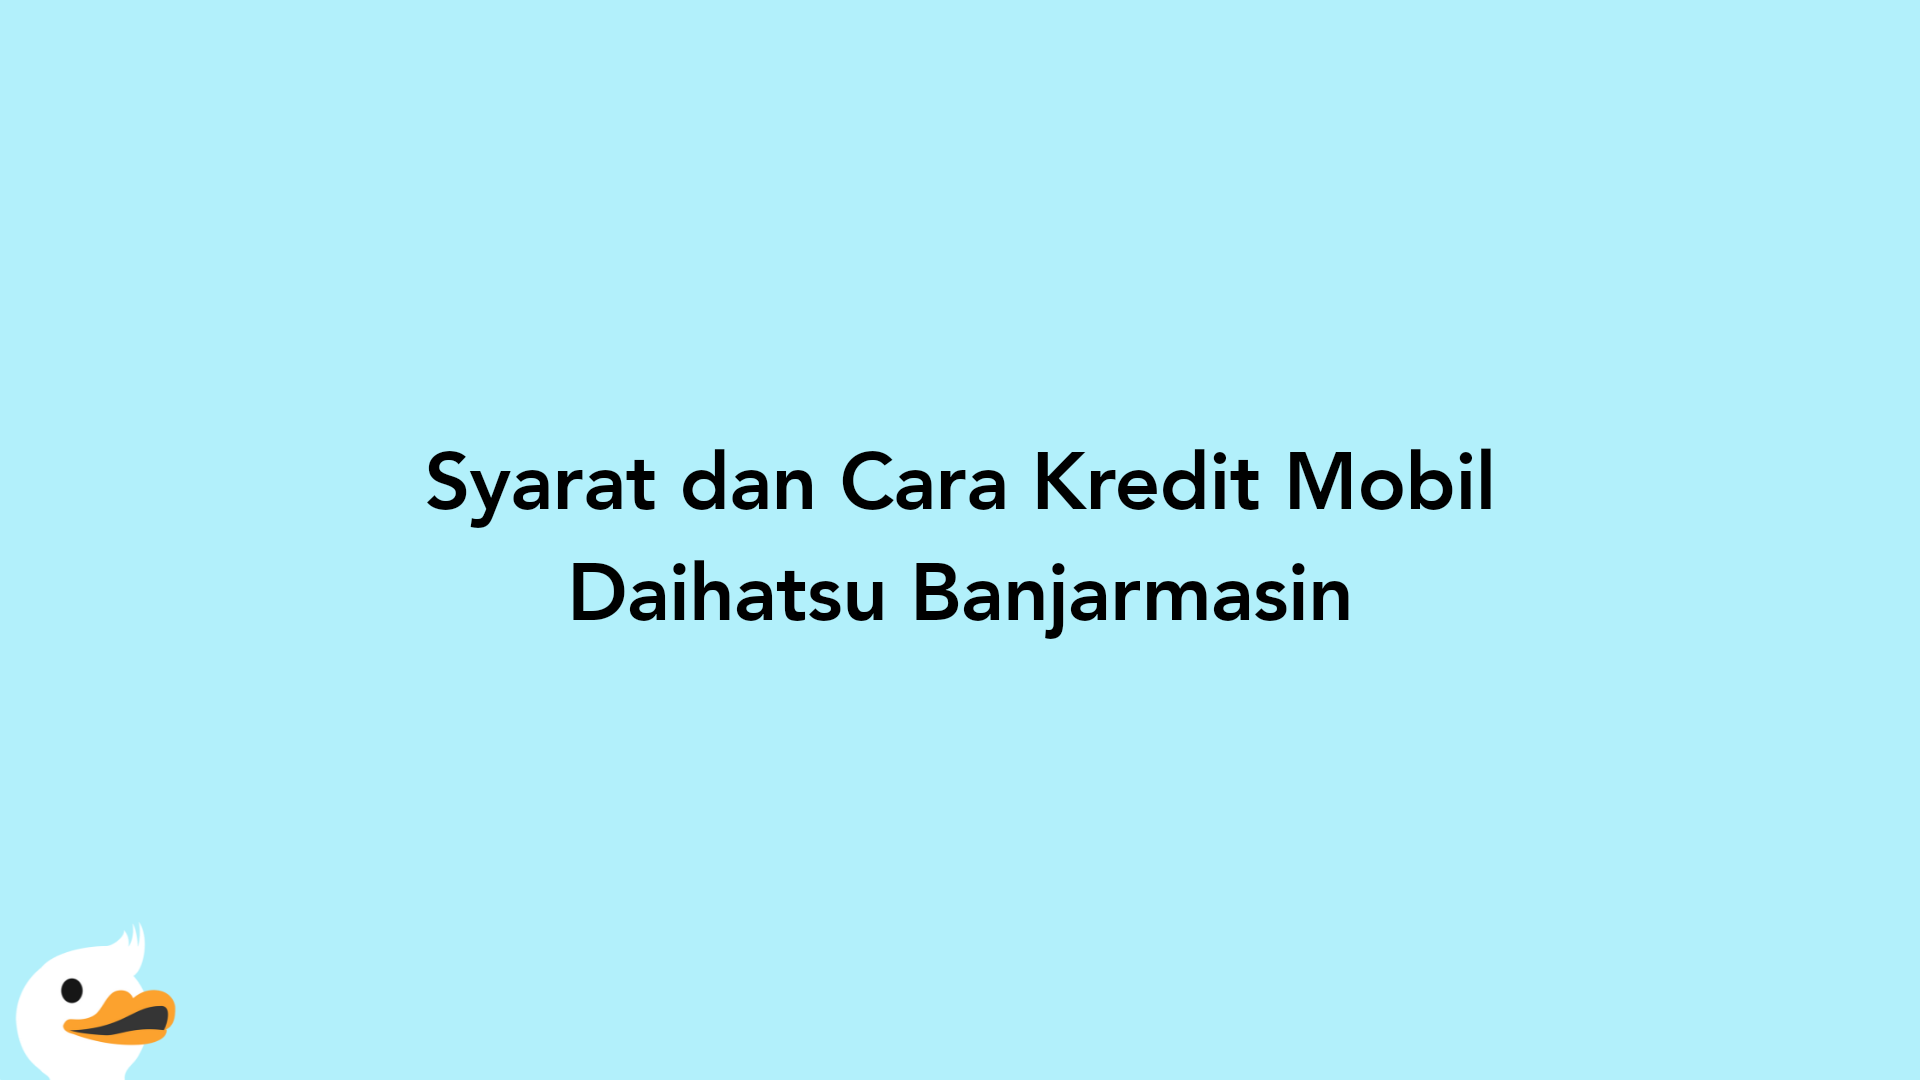 Syarat dan Cara Kredit Mobil Daihatsu Banjarmasin